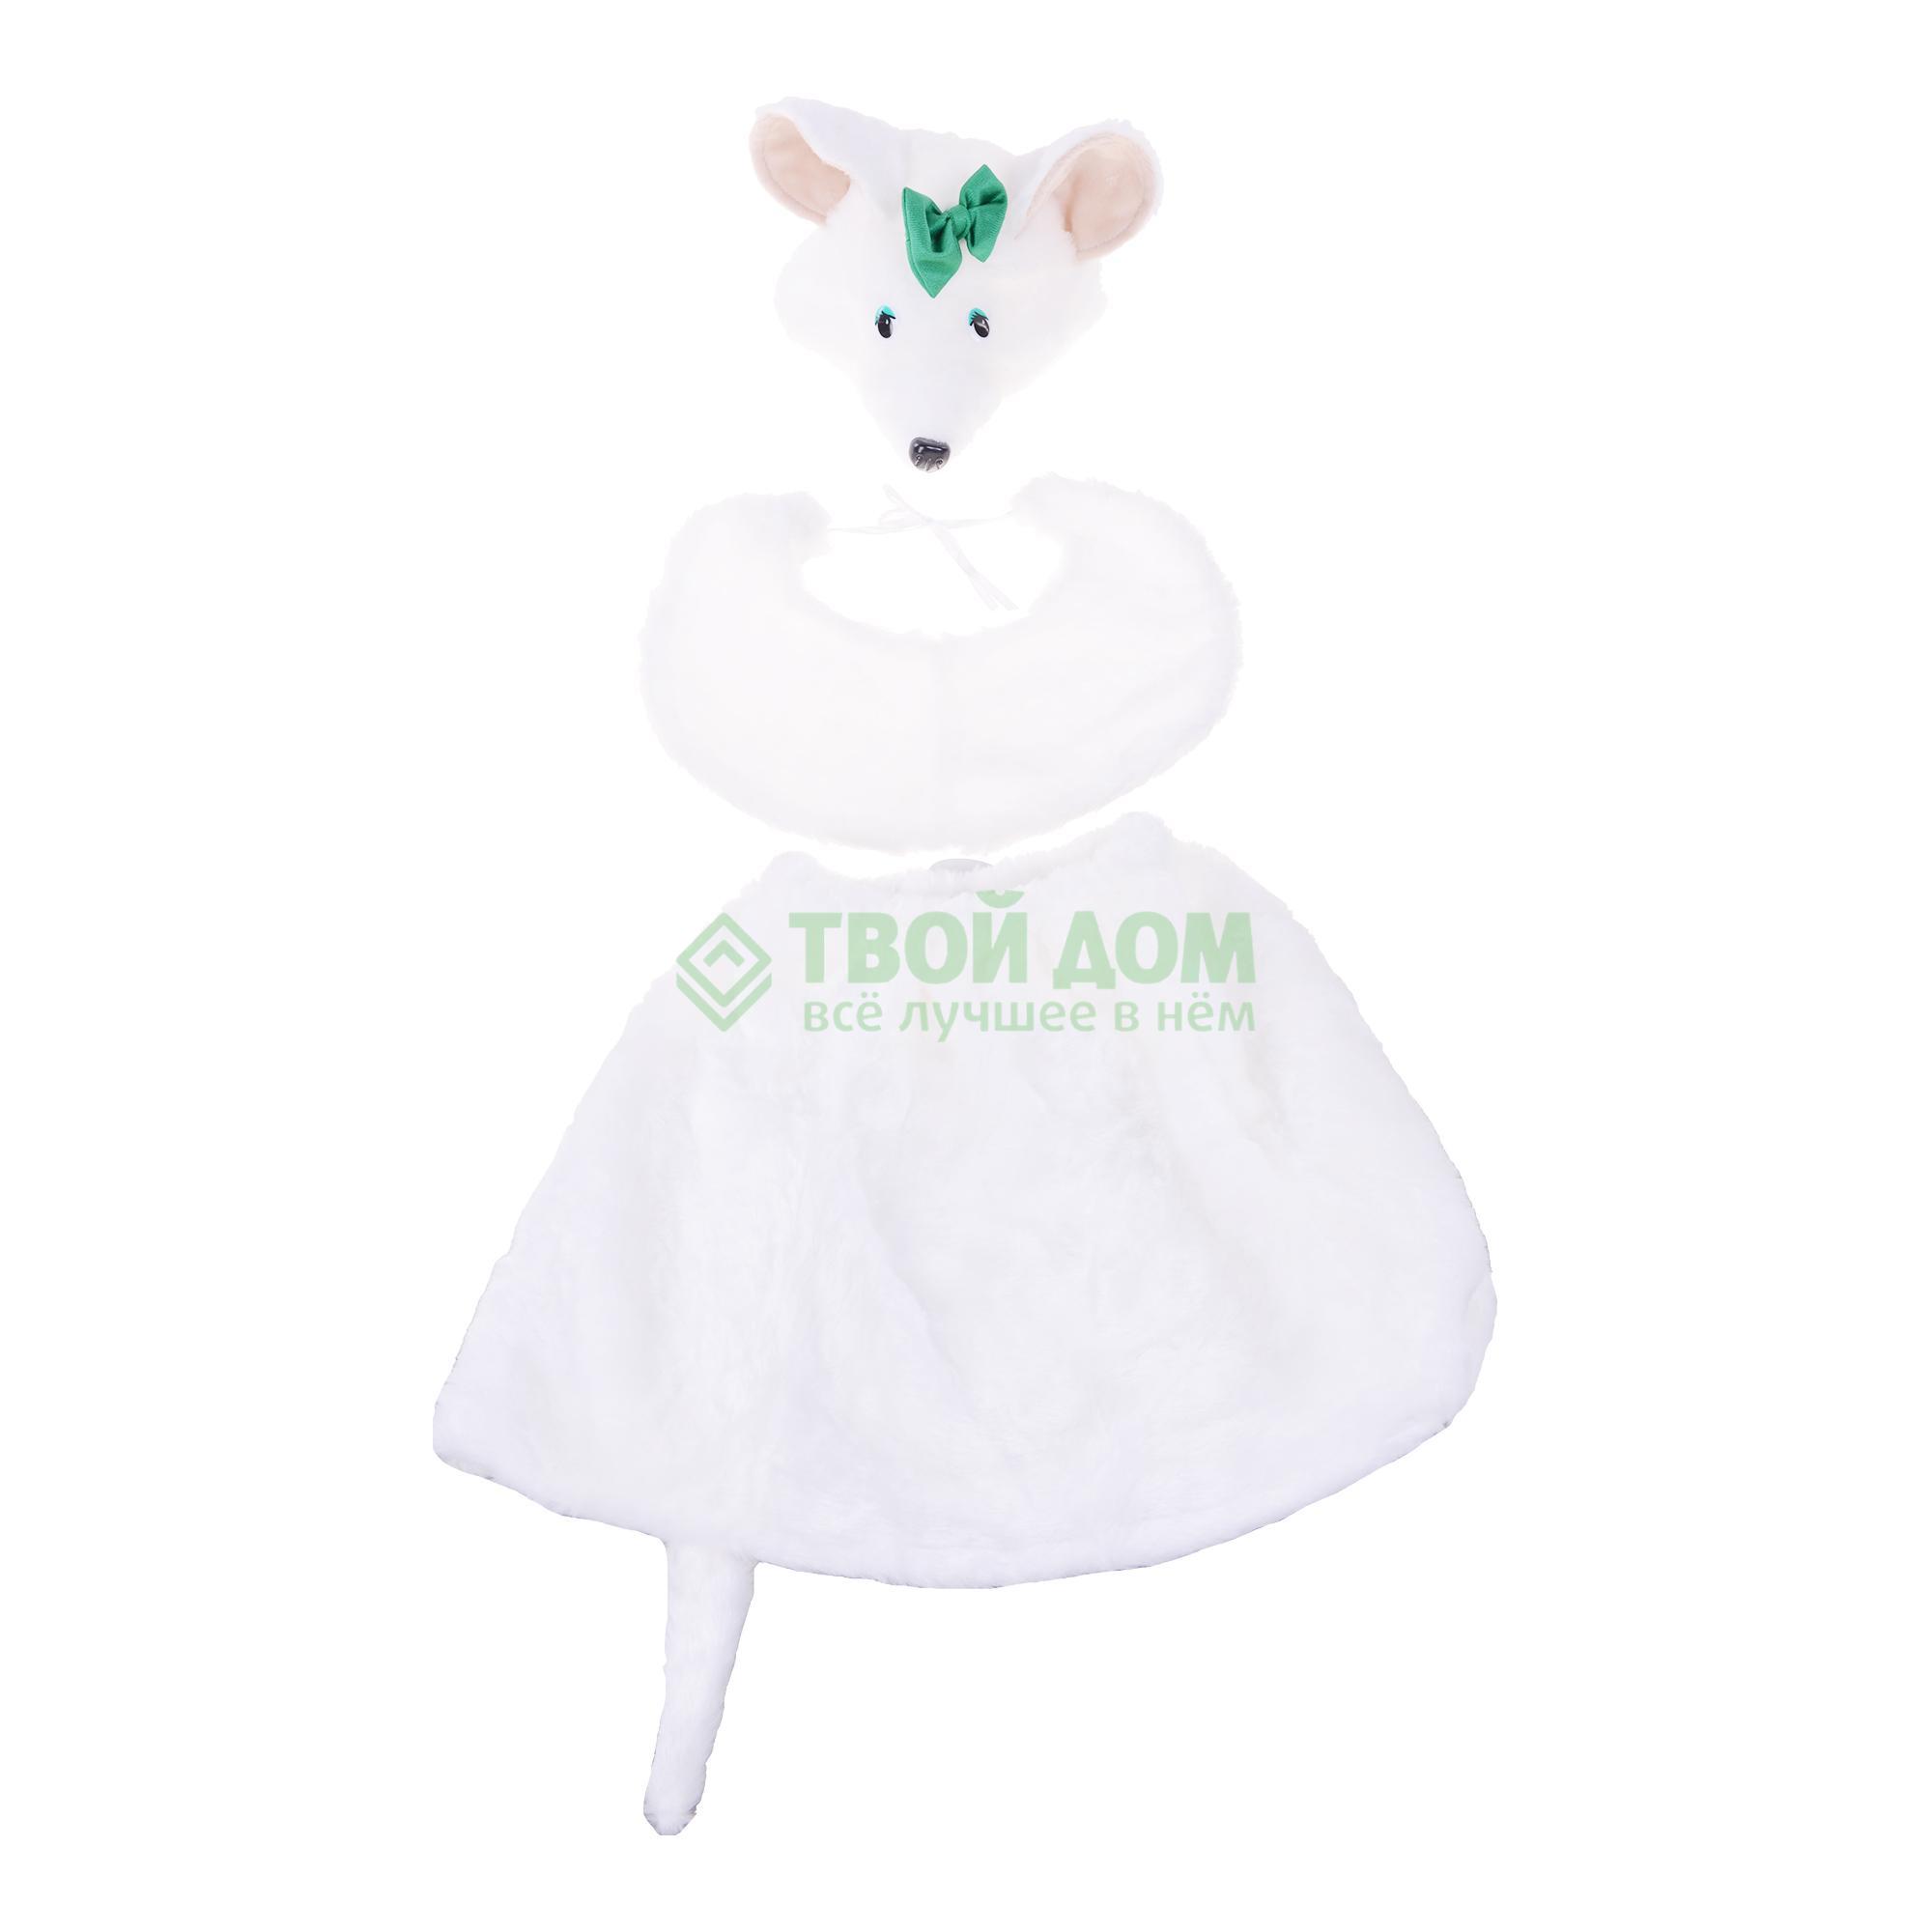 Артэ-Грим Карнавальный костюм мышка артэ грим карнавальный костюм овечка